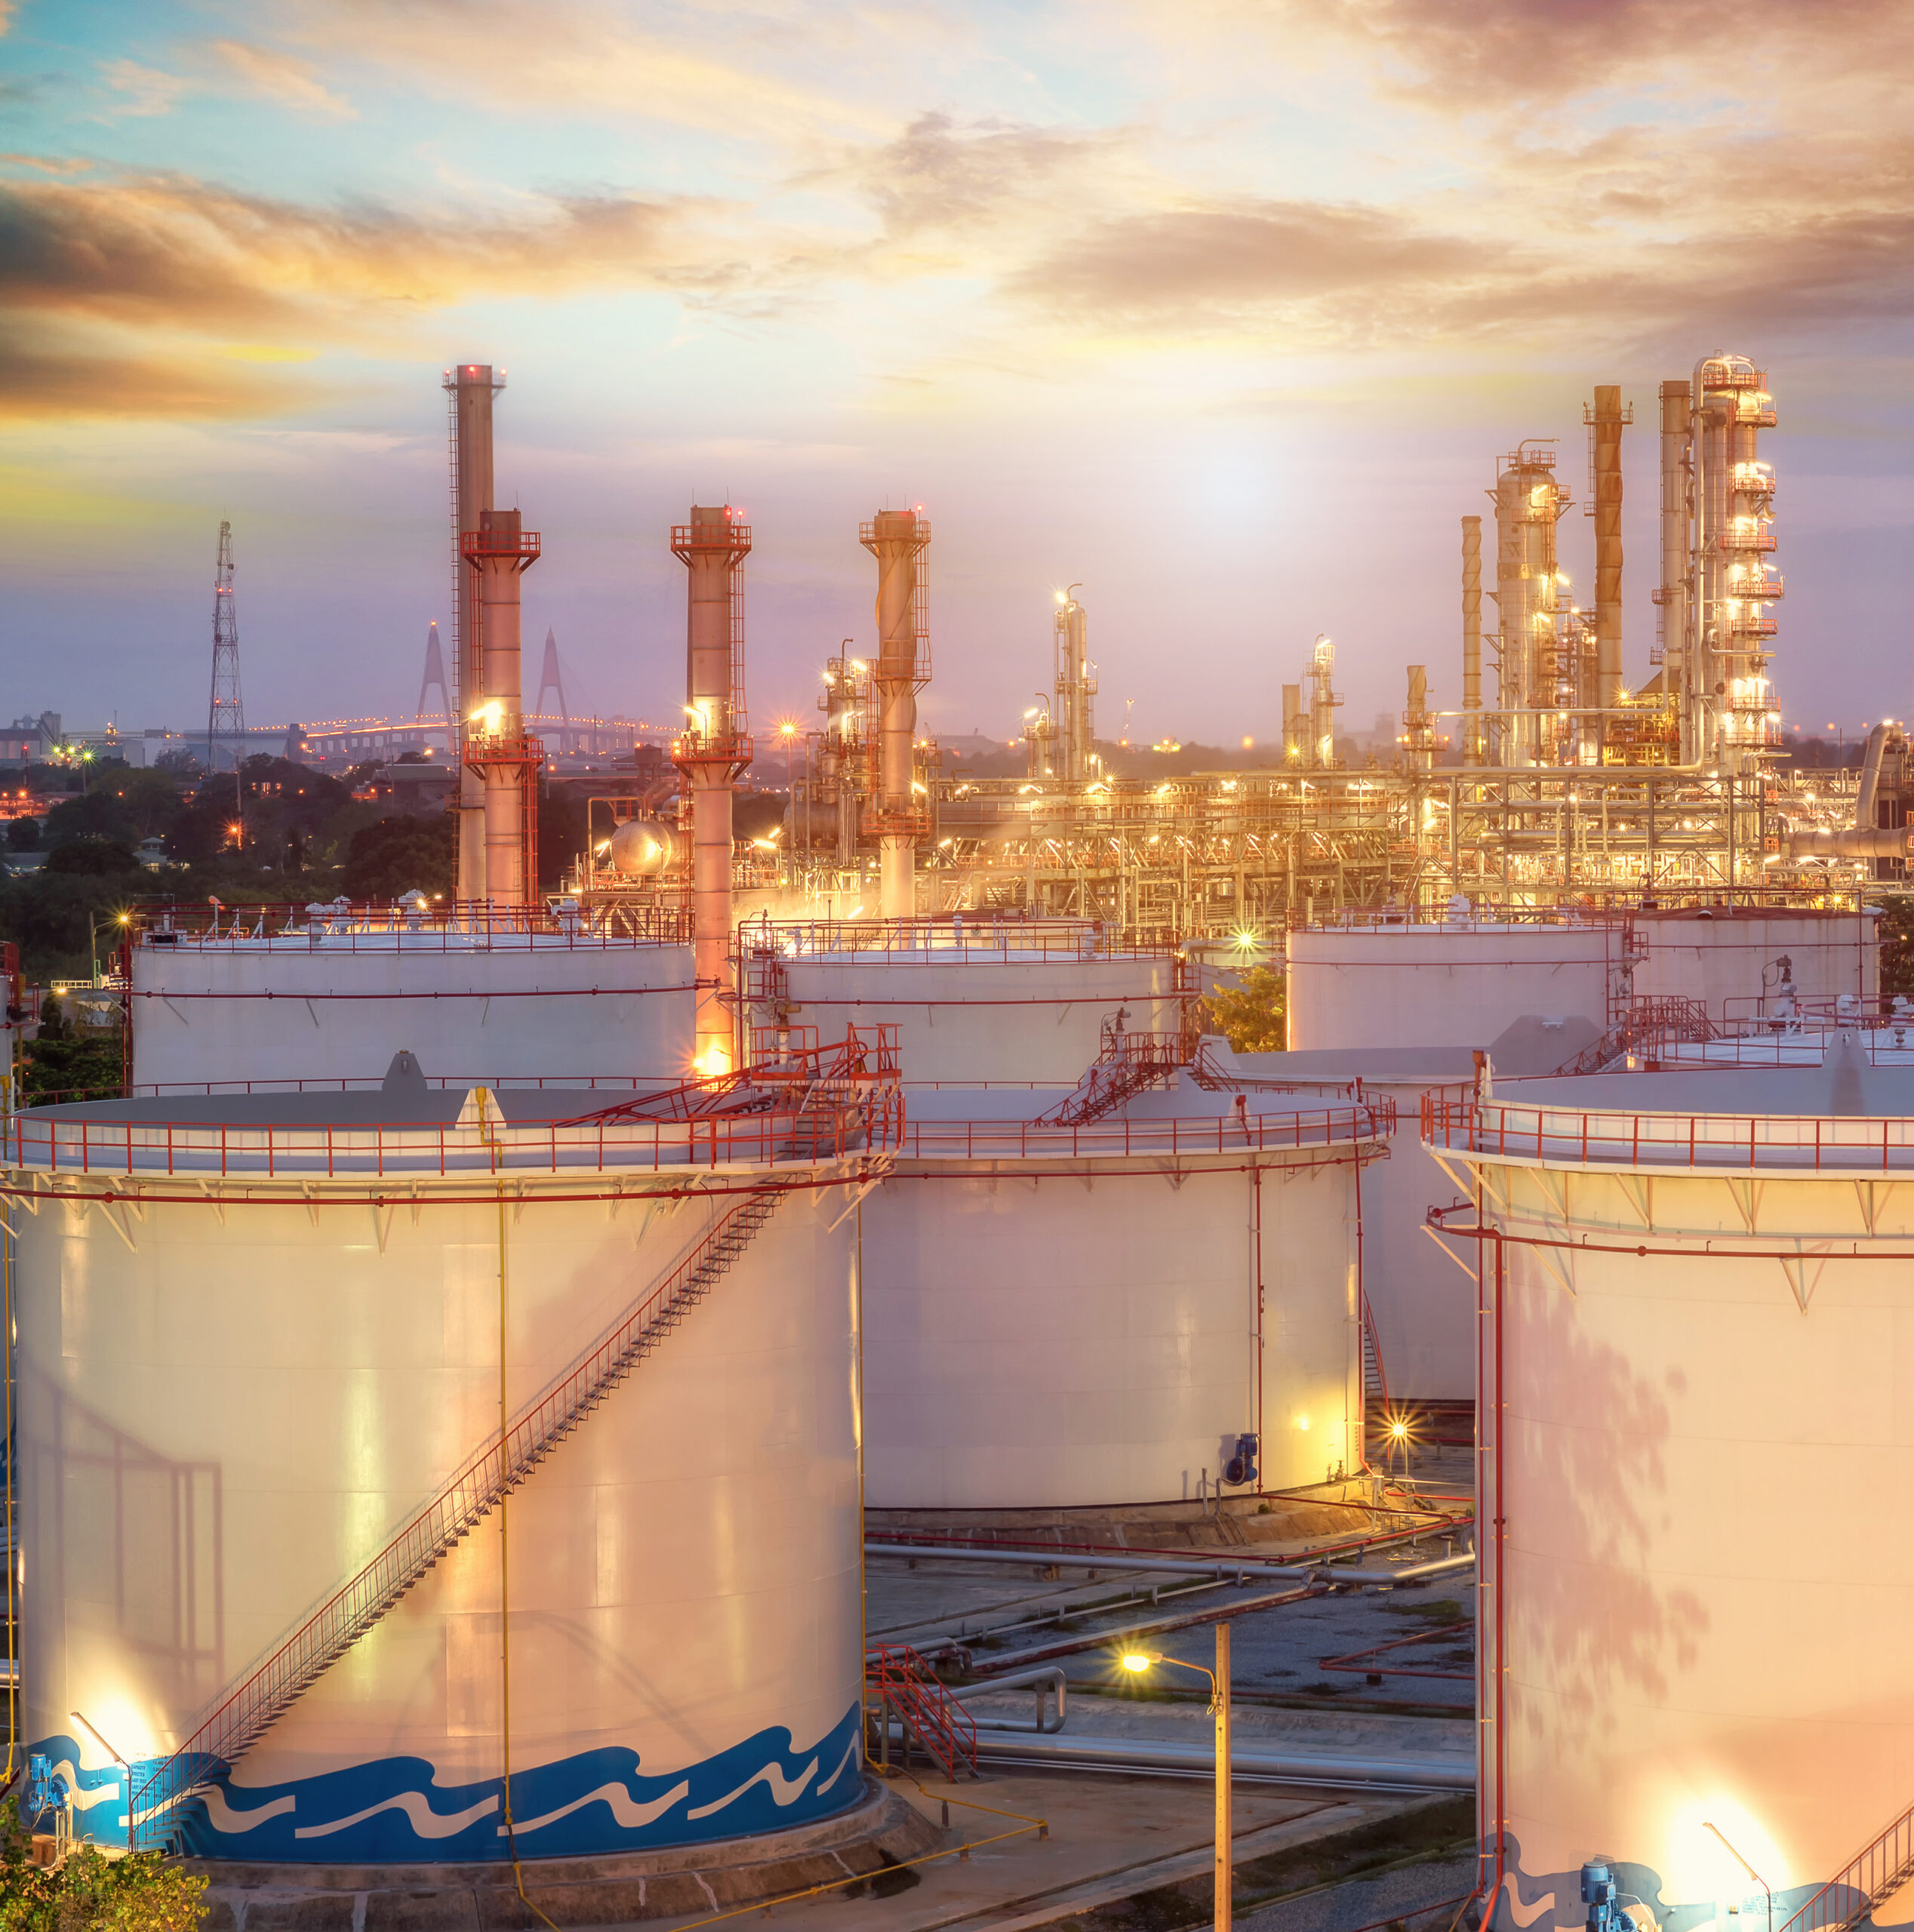 Vedanta Limited-Cairn Oil and Gas (Cairn), Індія: прогнозоване технічне обслуговування допомагає знизити витрати й збільшити видобуток нафти